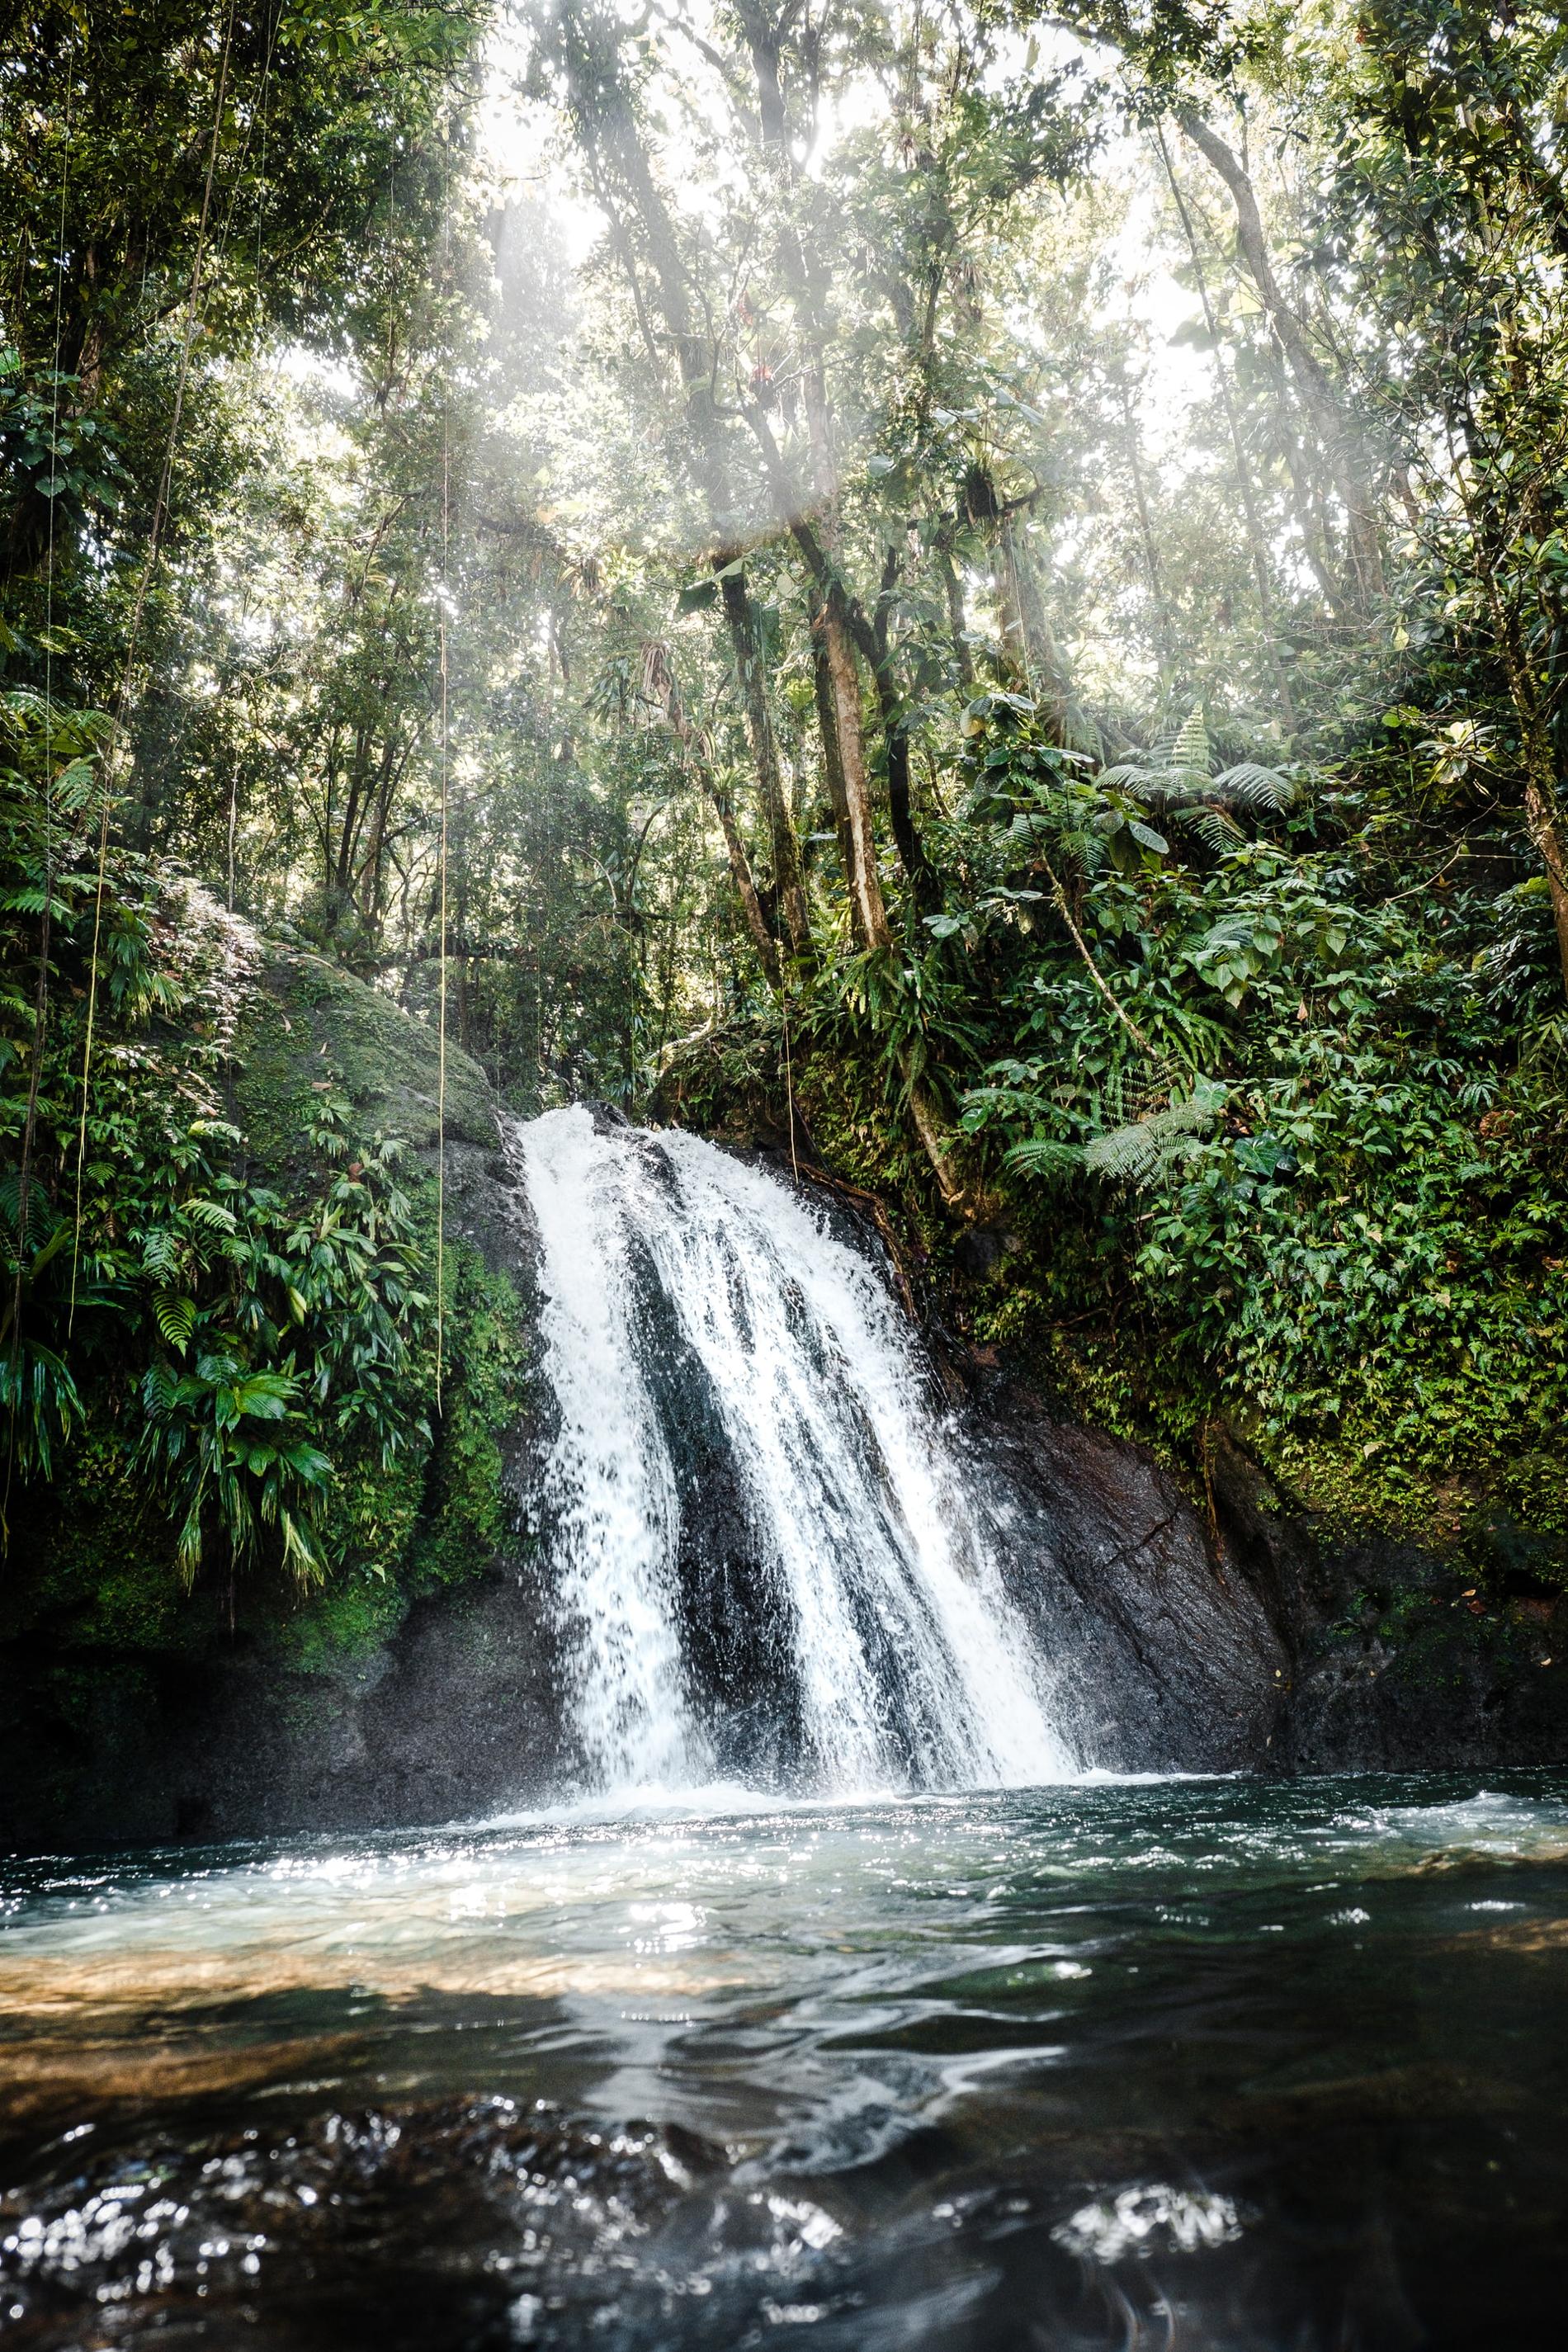 La cascade aux écrevisses dans la forêt humide de Guadeloupe © Daniel Öberg - Unsplash